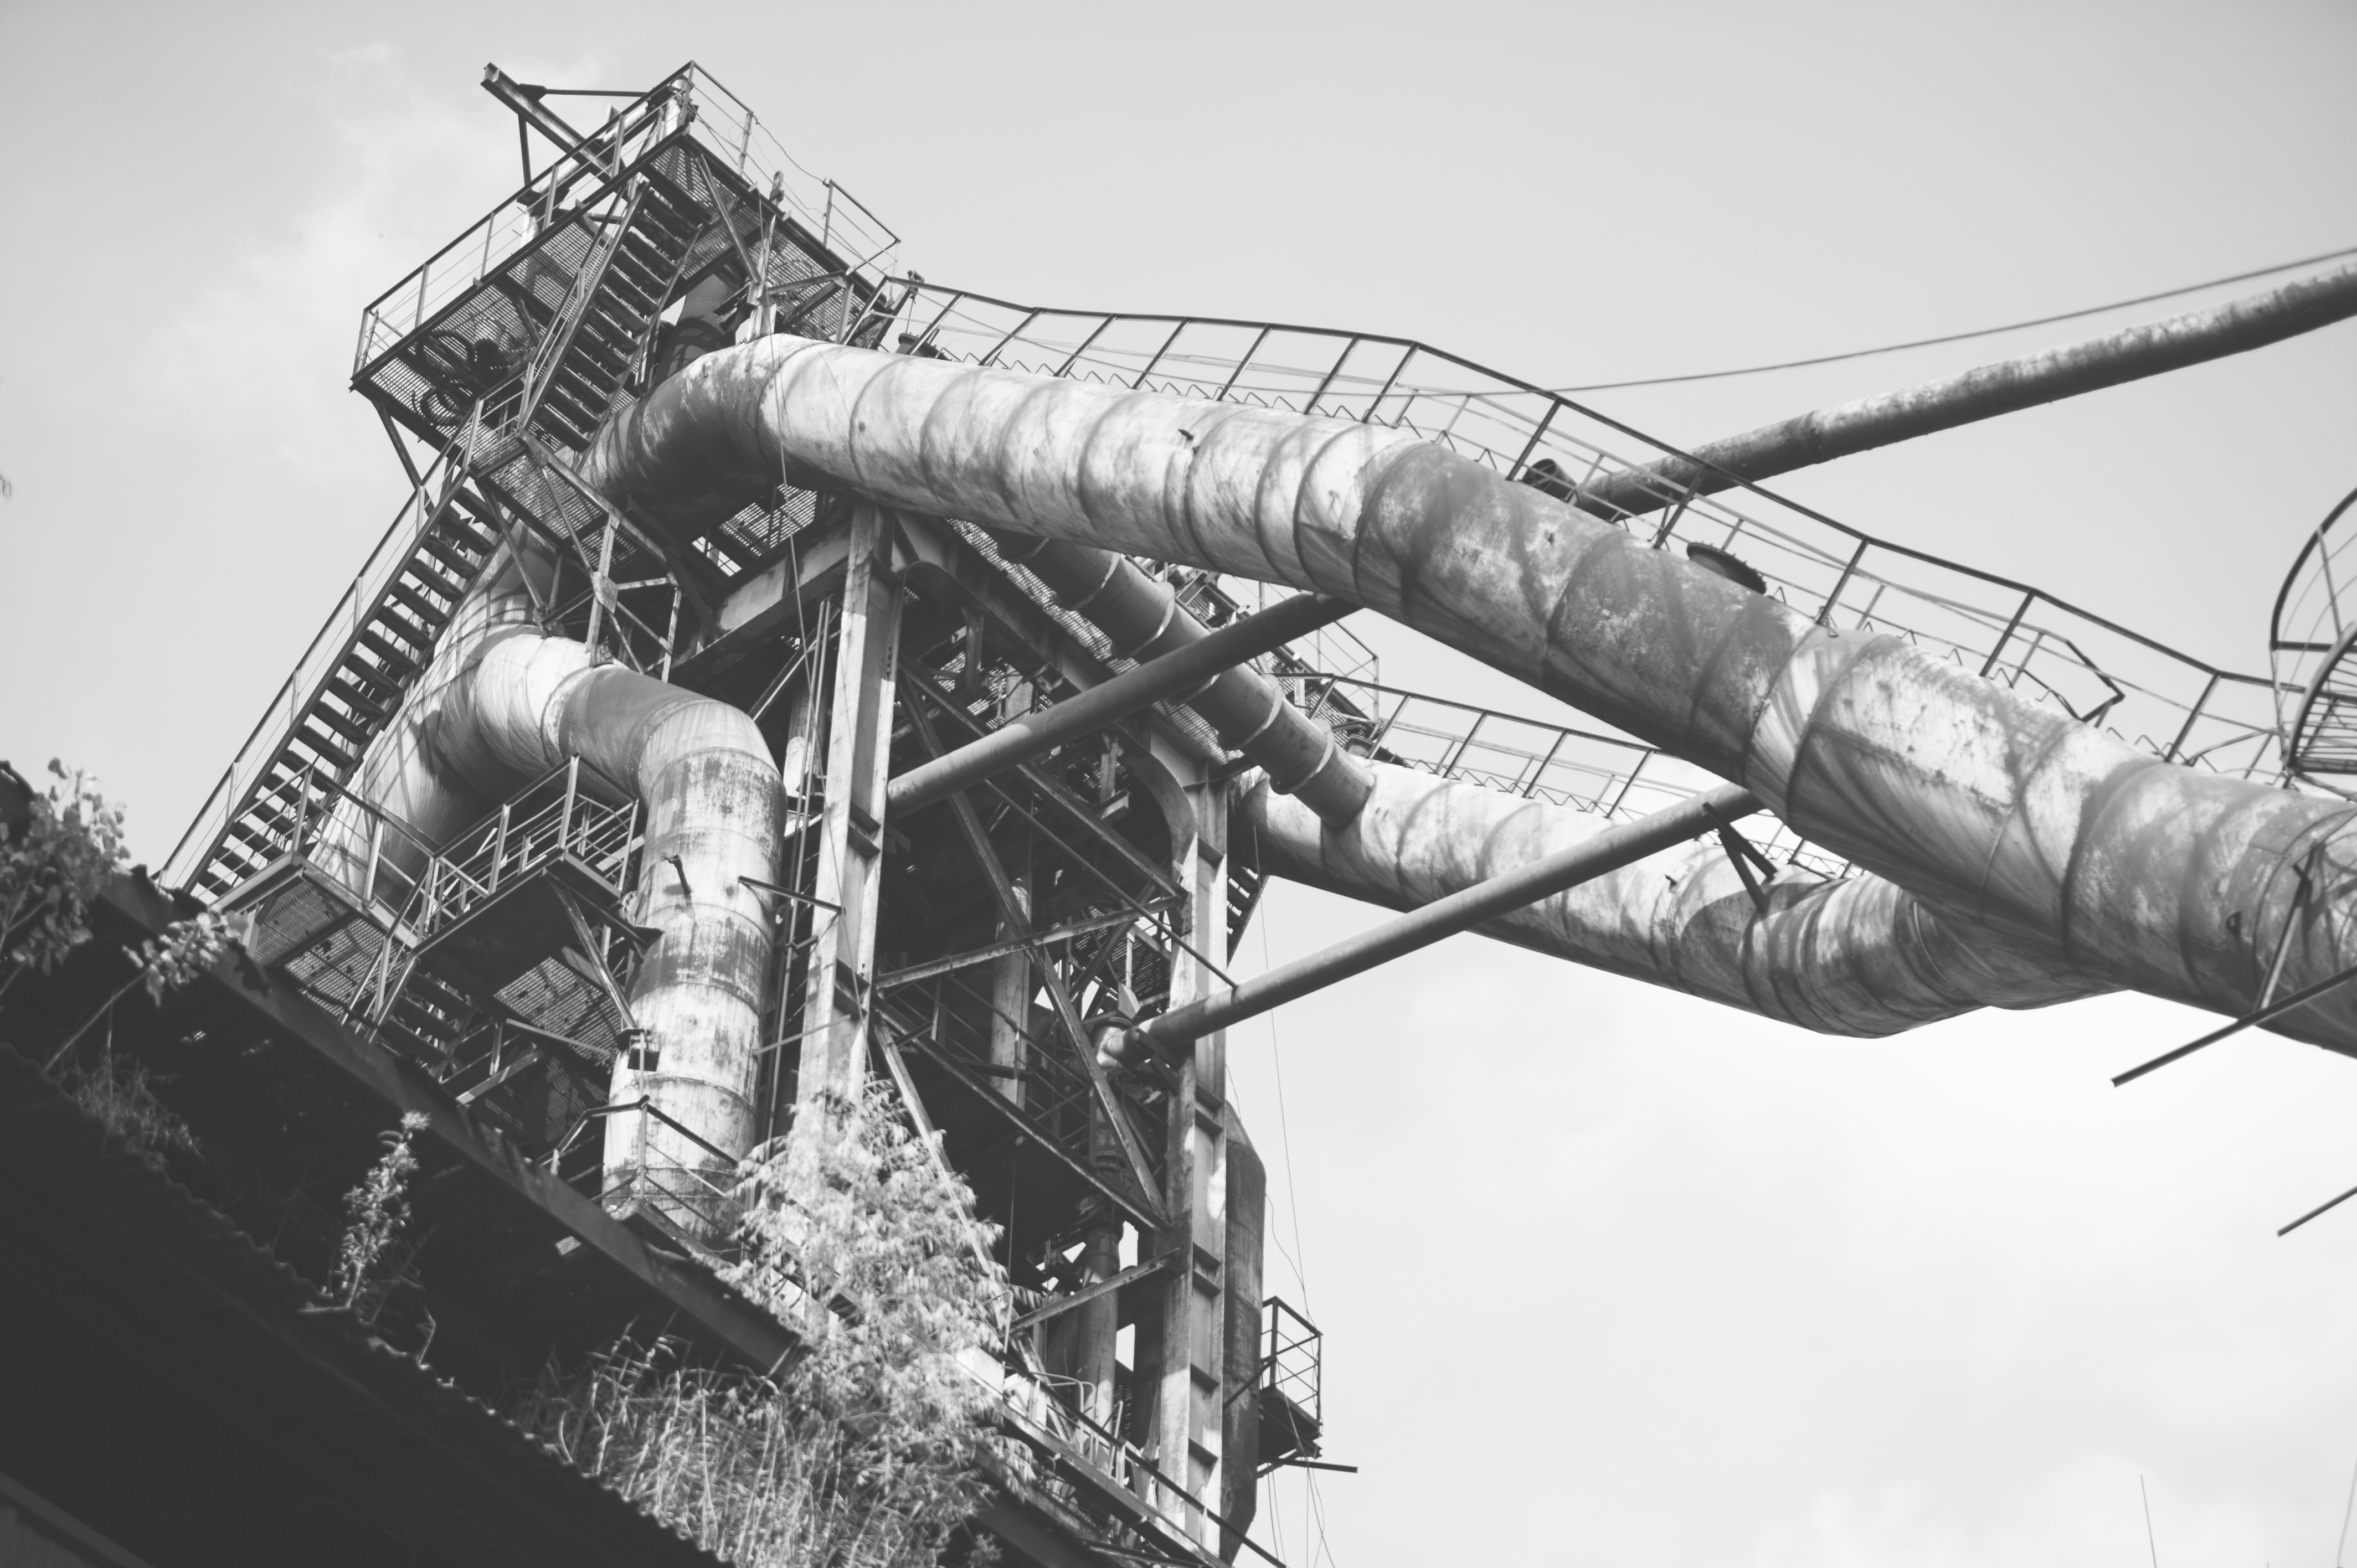 寻找合肥老工业基地的记忆——原马钢合肥公司炼铁厂